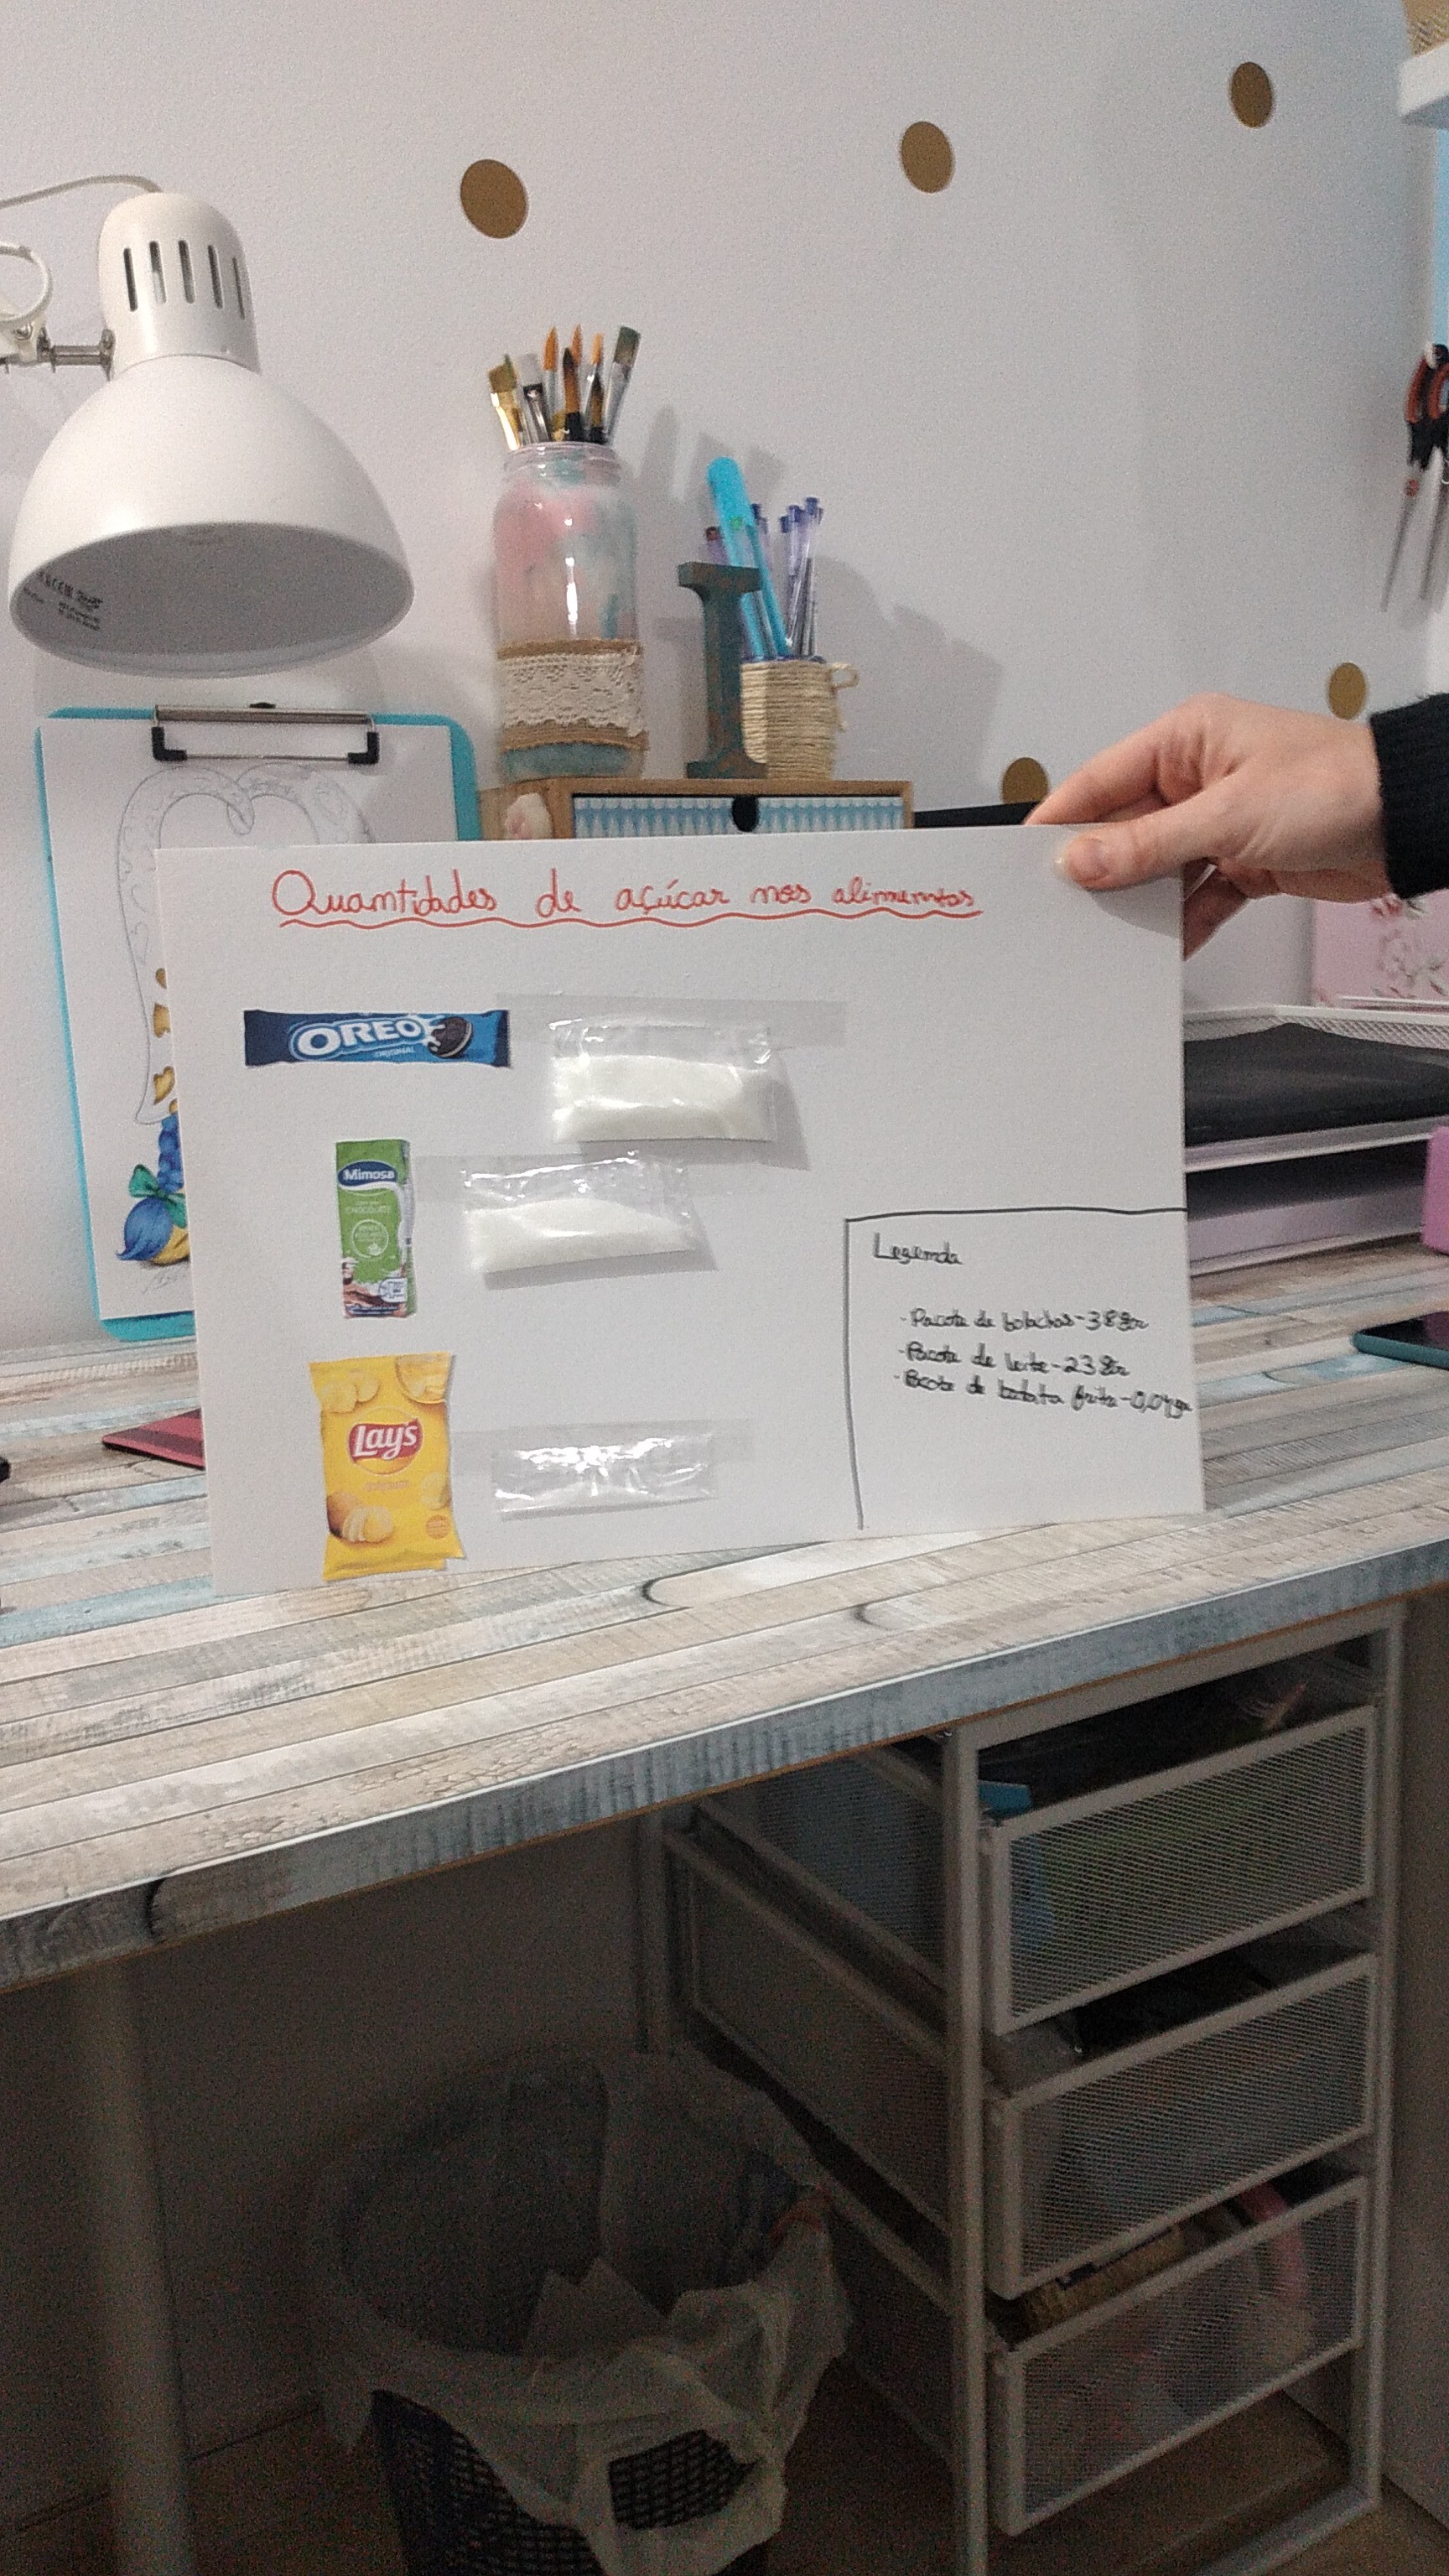 Este grupo decidiu colocar em pacotes transparentes a quantidade de açúcar contido nos alimentos para ser de mais fácil interpretação e sensibilização.